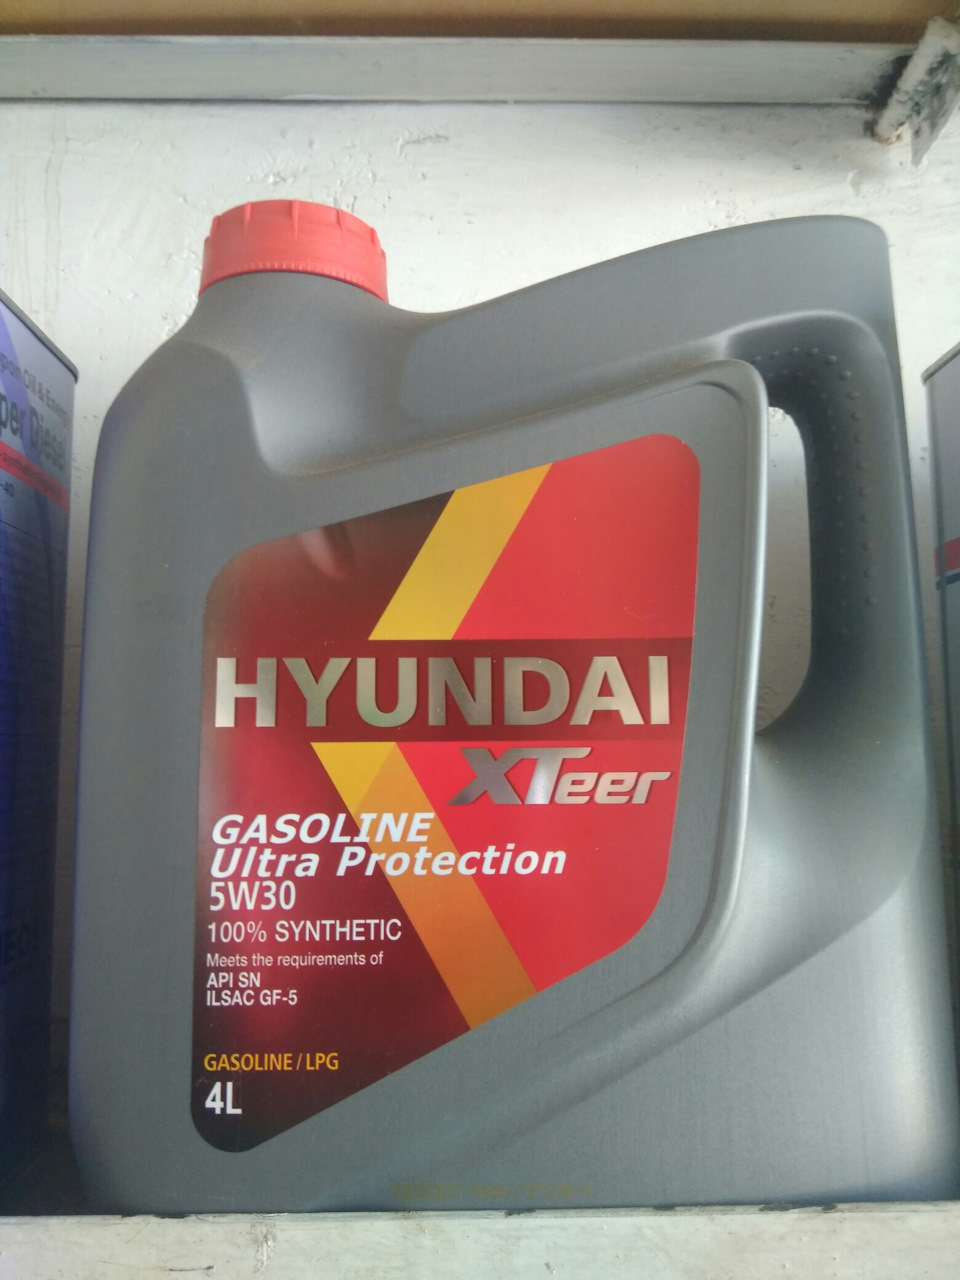 Икс тир масло. Hyundai XTEER 5w30 Ultra Protection. Hyundai XTEER gasoline Ultra Protection 5w-30 4 л. Hyundai XTEER gasoline Ultra Protection 5w30 1 л. 1041002 Hyundai XTEER.